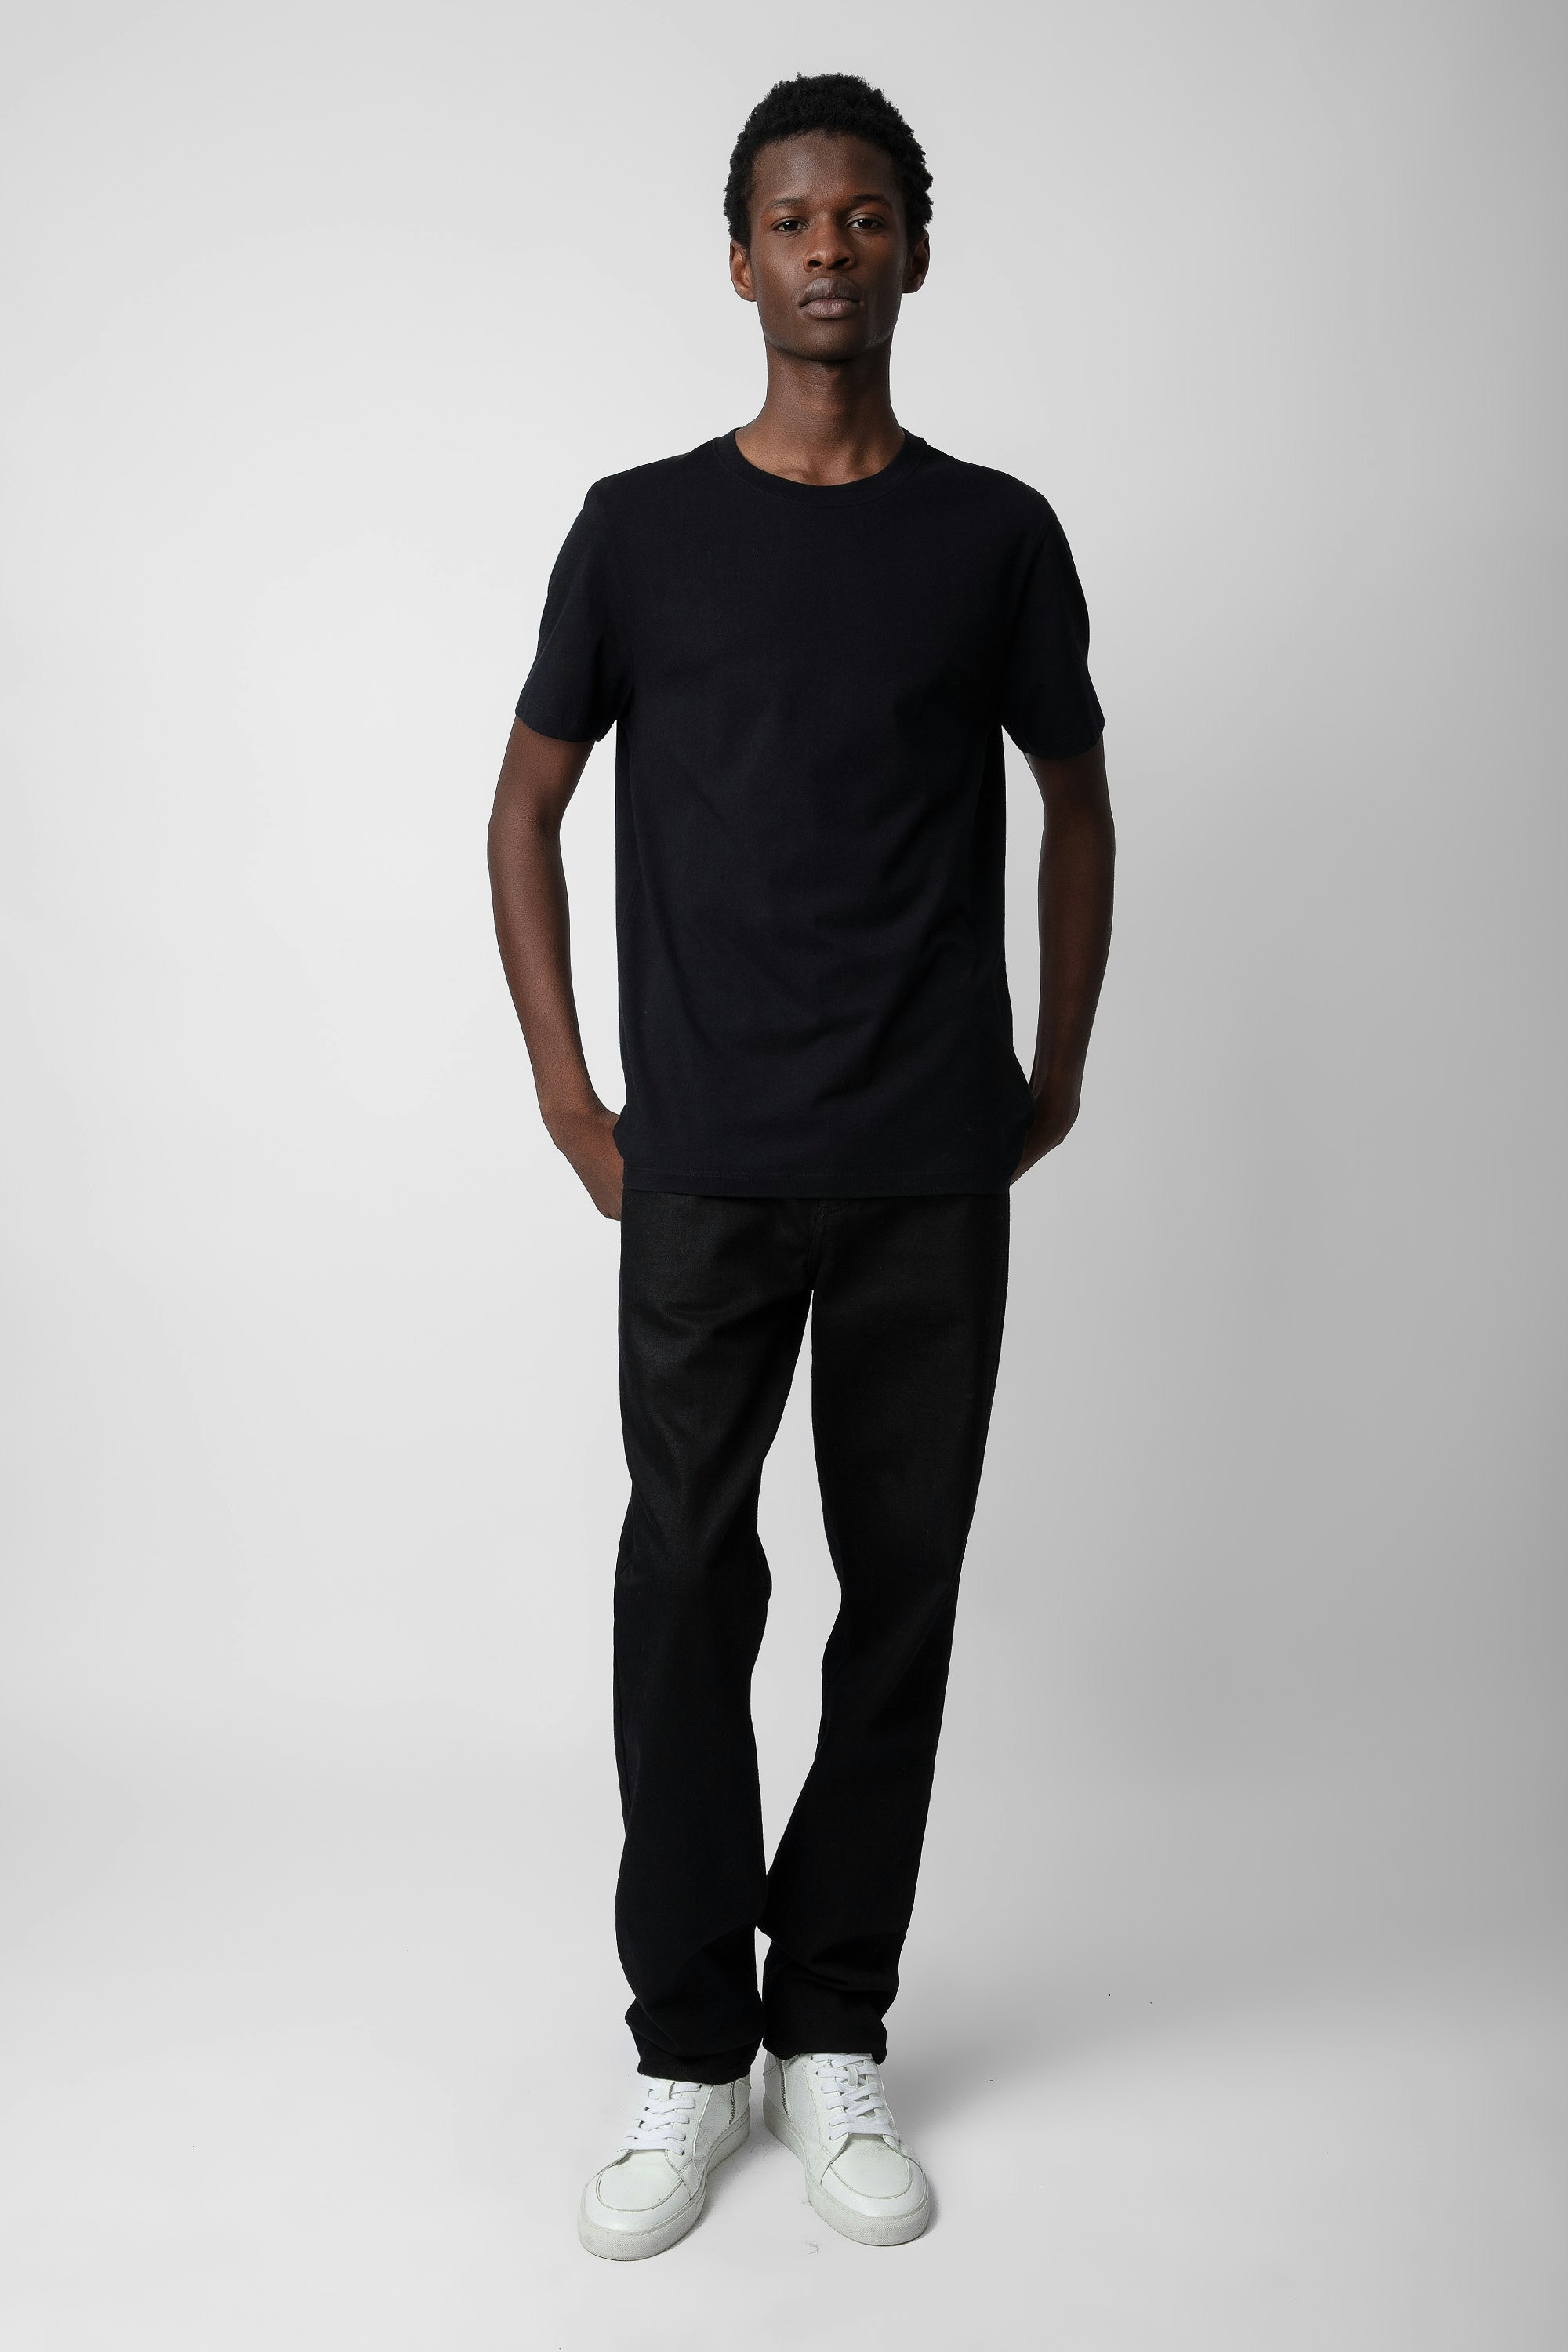 Camiseta con estampado fotográfico Ted - Camiseta negra de algodón para hombre con impresión fotográfica de gasolinera en la espalda.